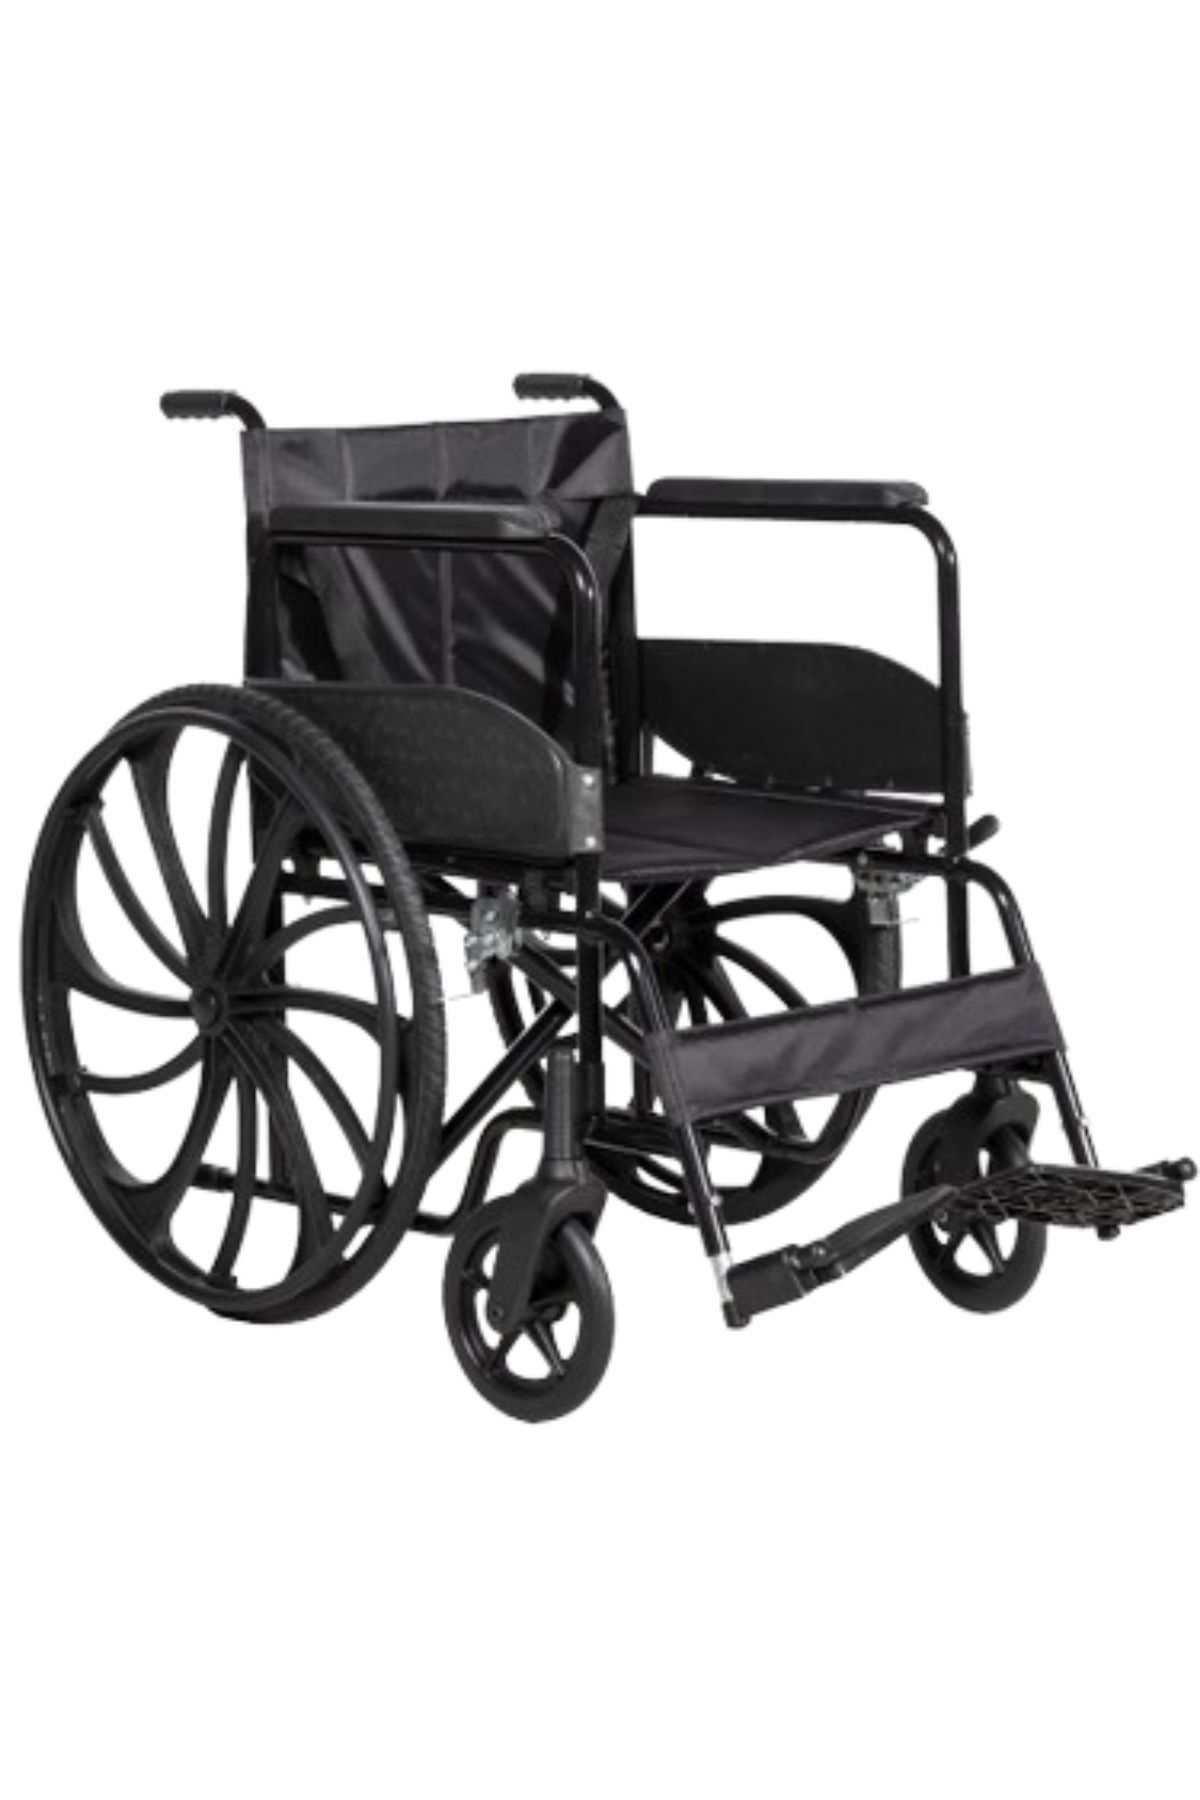 Sağlam Tekerlekli Sandalye | Hasta Transfer Sandalyesi | Lüx 1.Sınıf